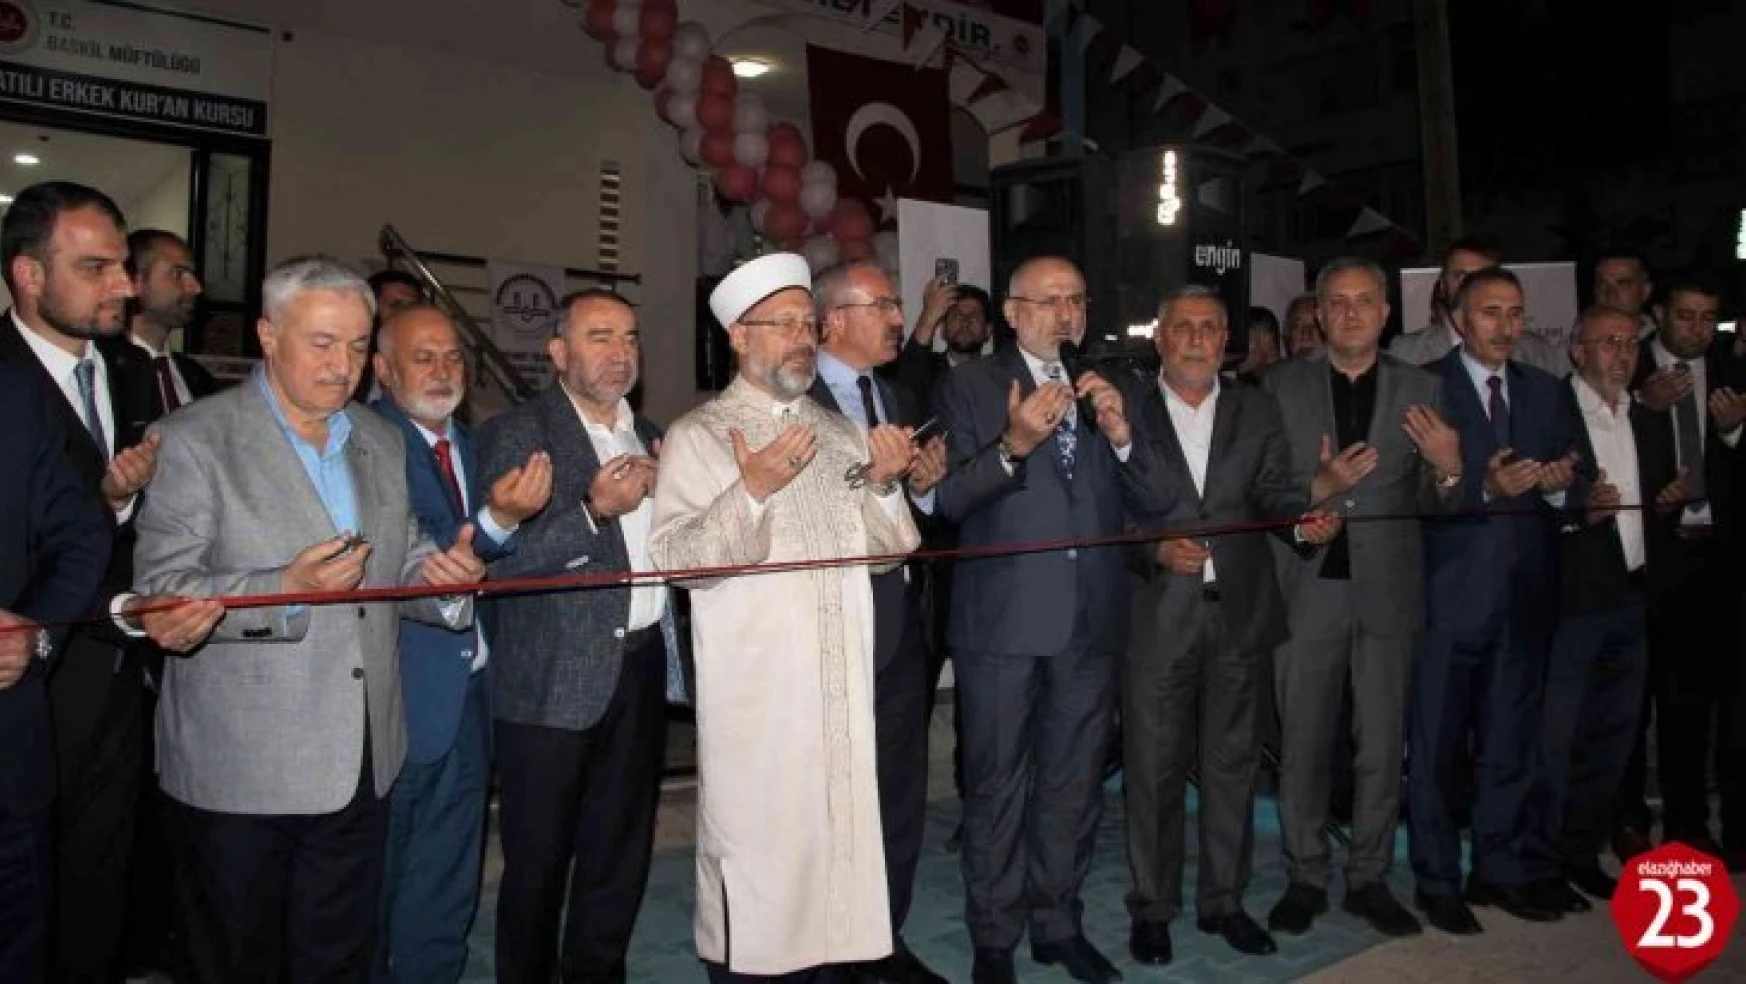 Diyanet İşleri Başkanı Erbaş, Elazığ'da 65 öğrenci kapasiteli Kur'an kursunun açılışına katıldı